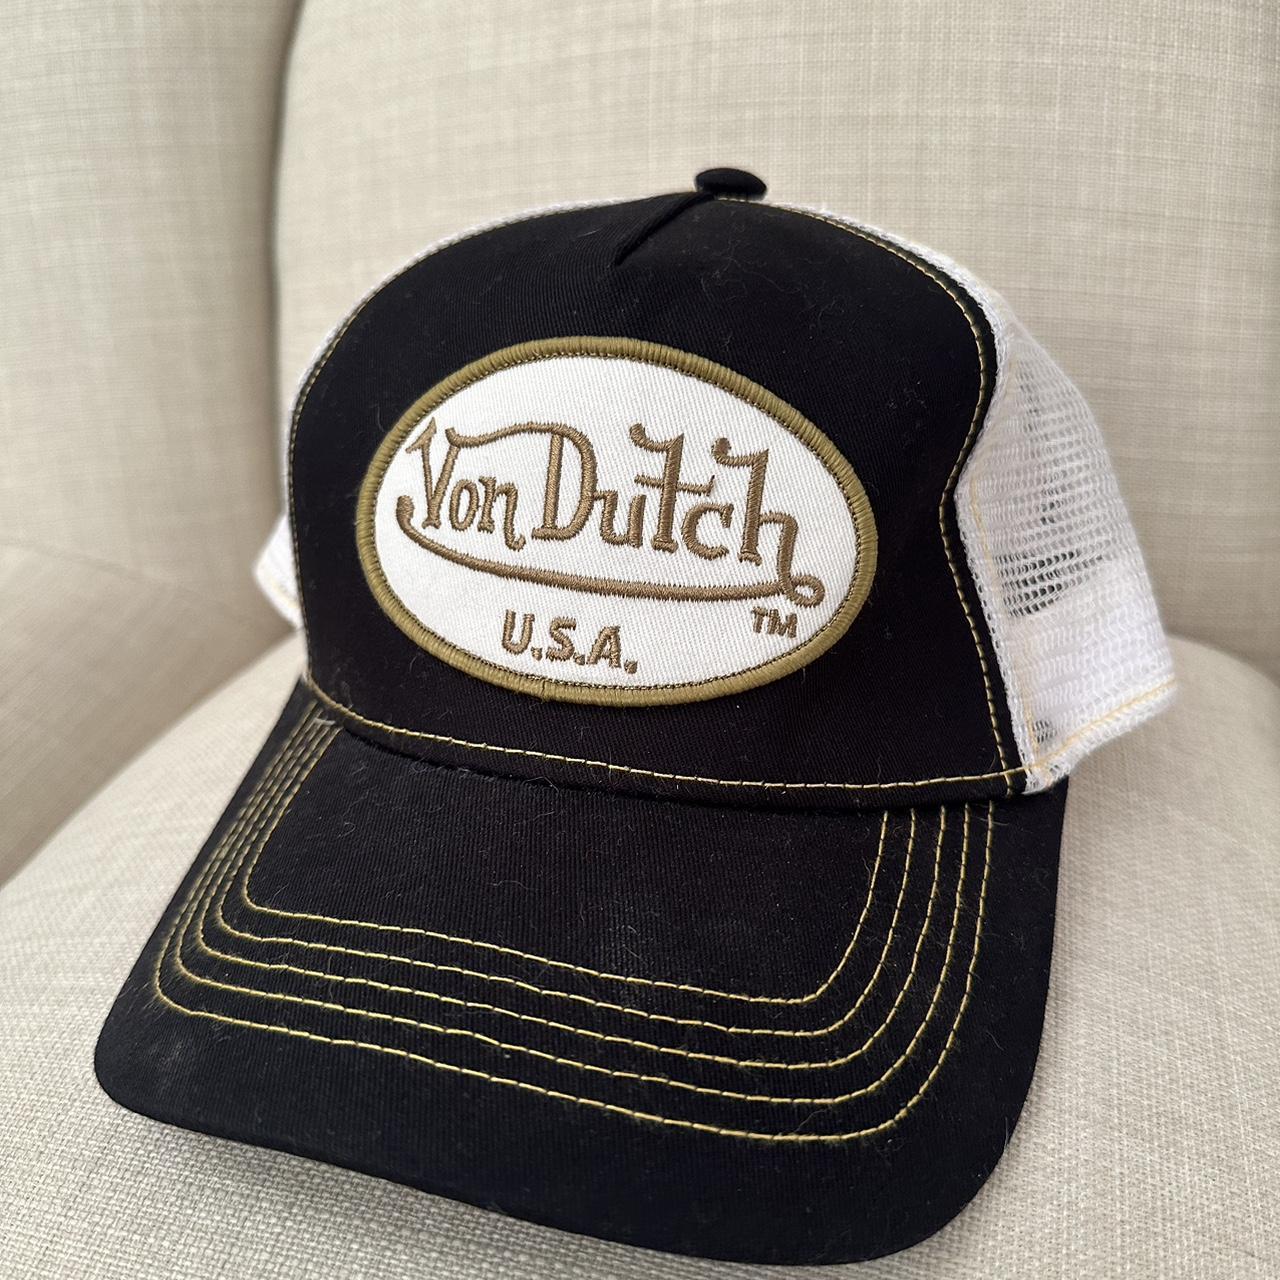 Von Dutch Hat great condition - Depop